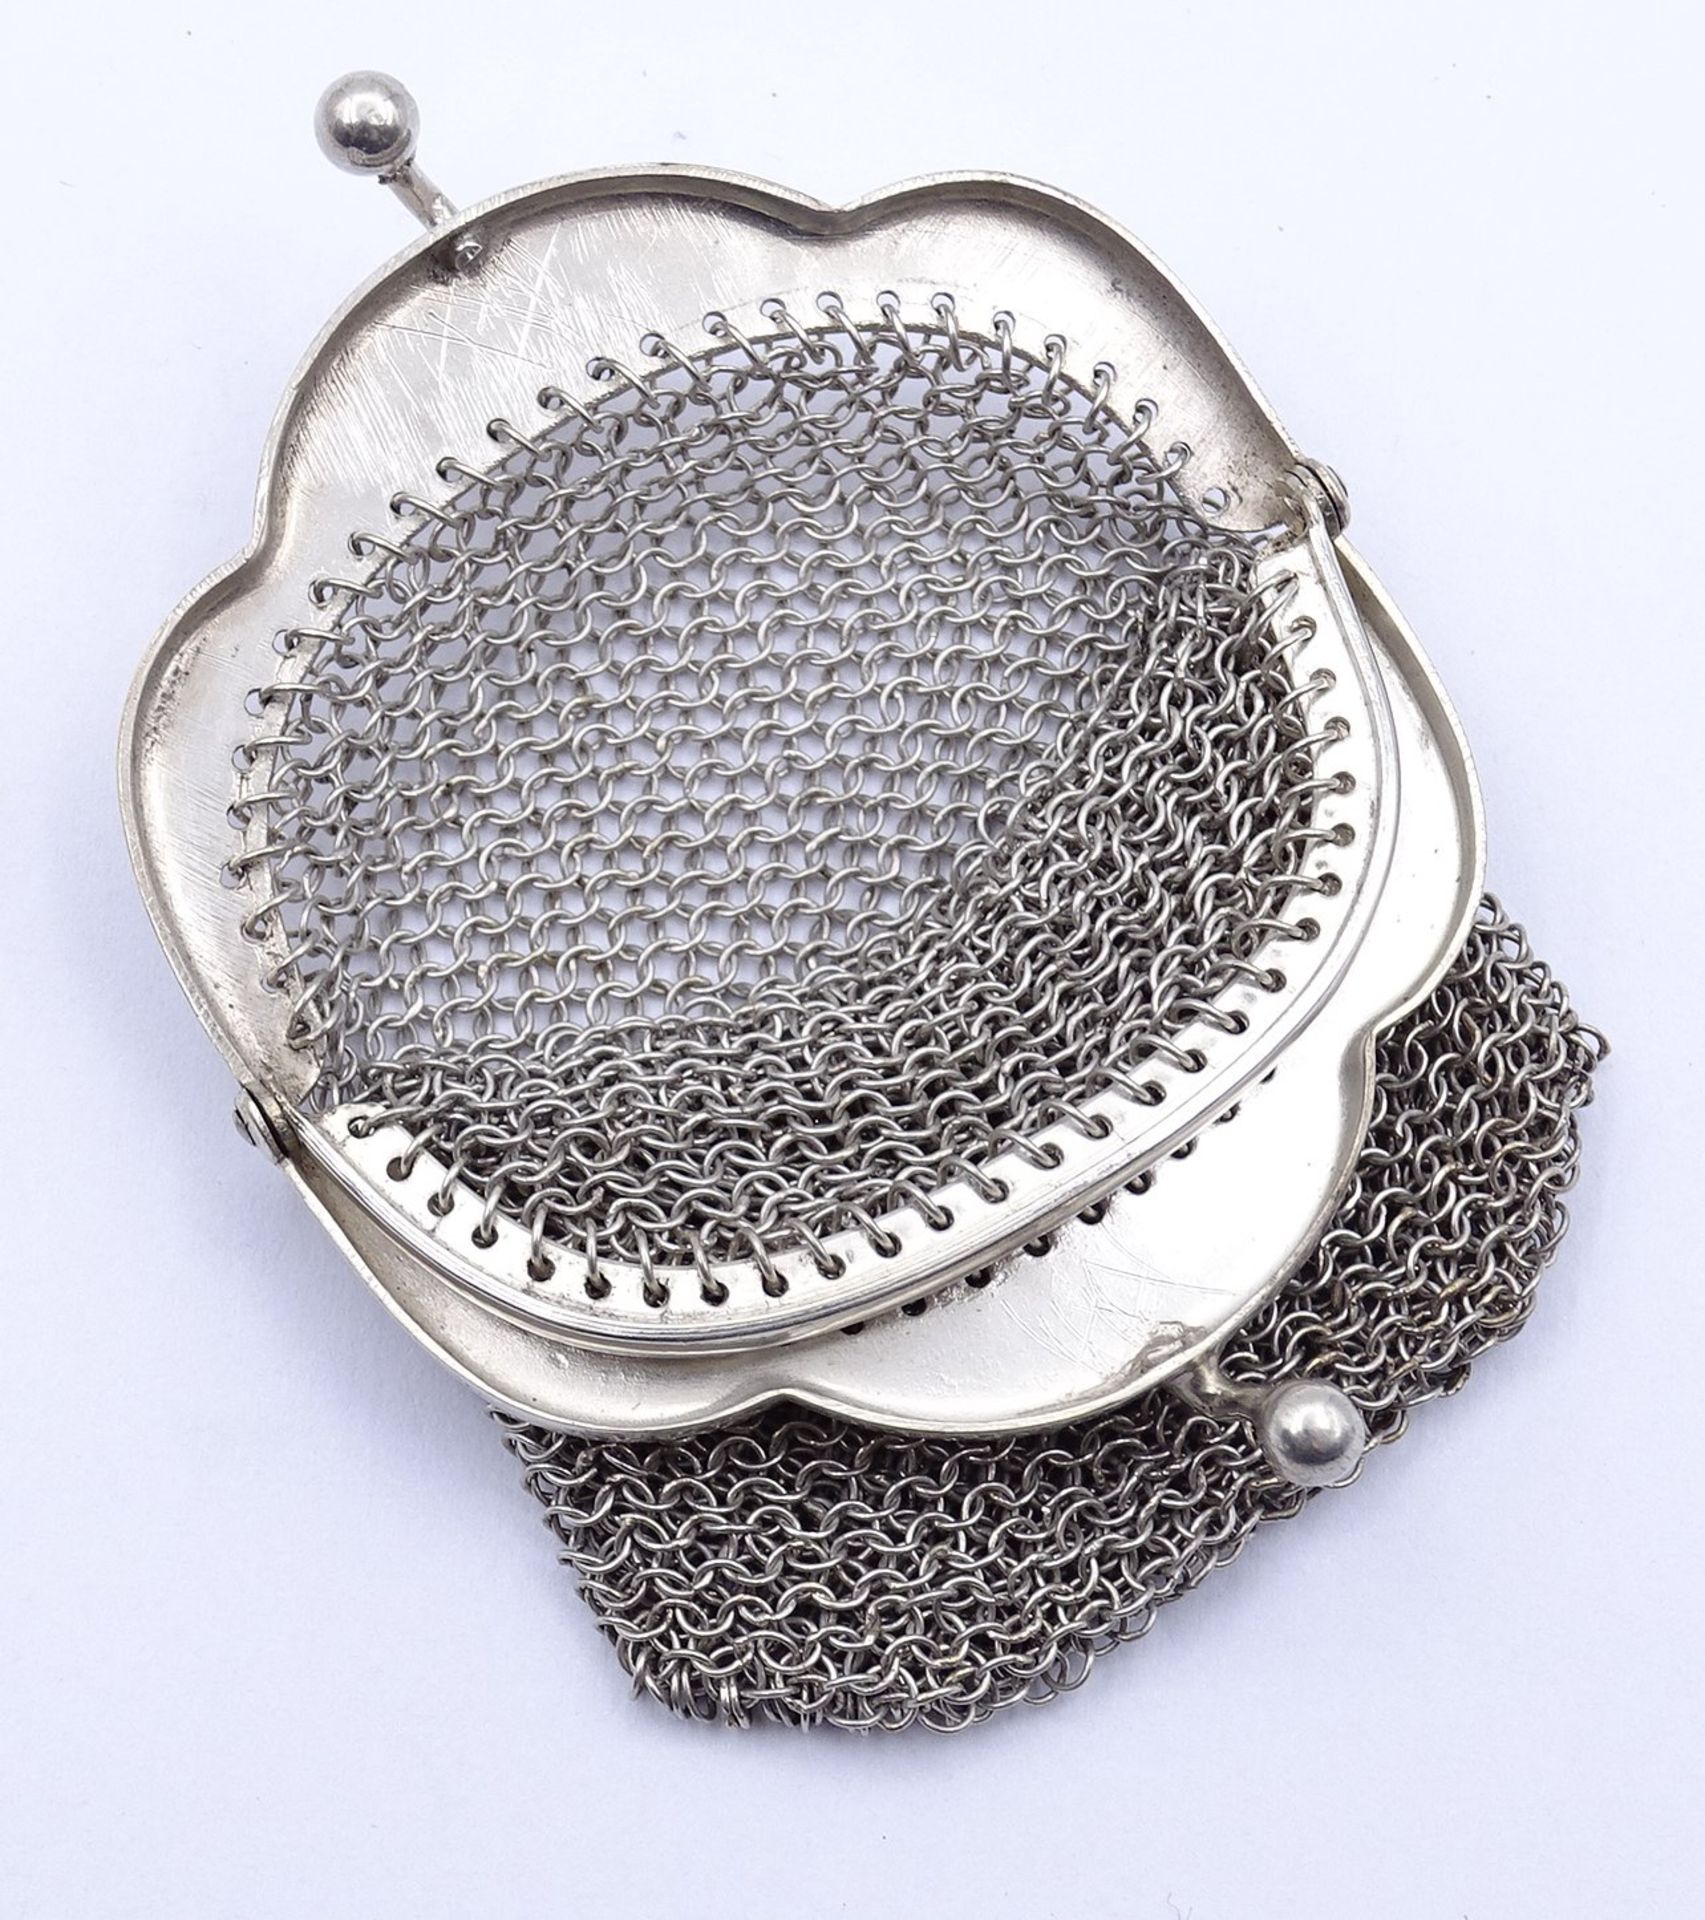 kl. Kettentasche aus Silber 0.800, 29,2g., L. 6,8cm - Image 3 of 3